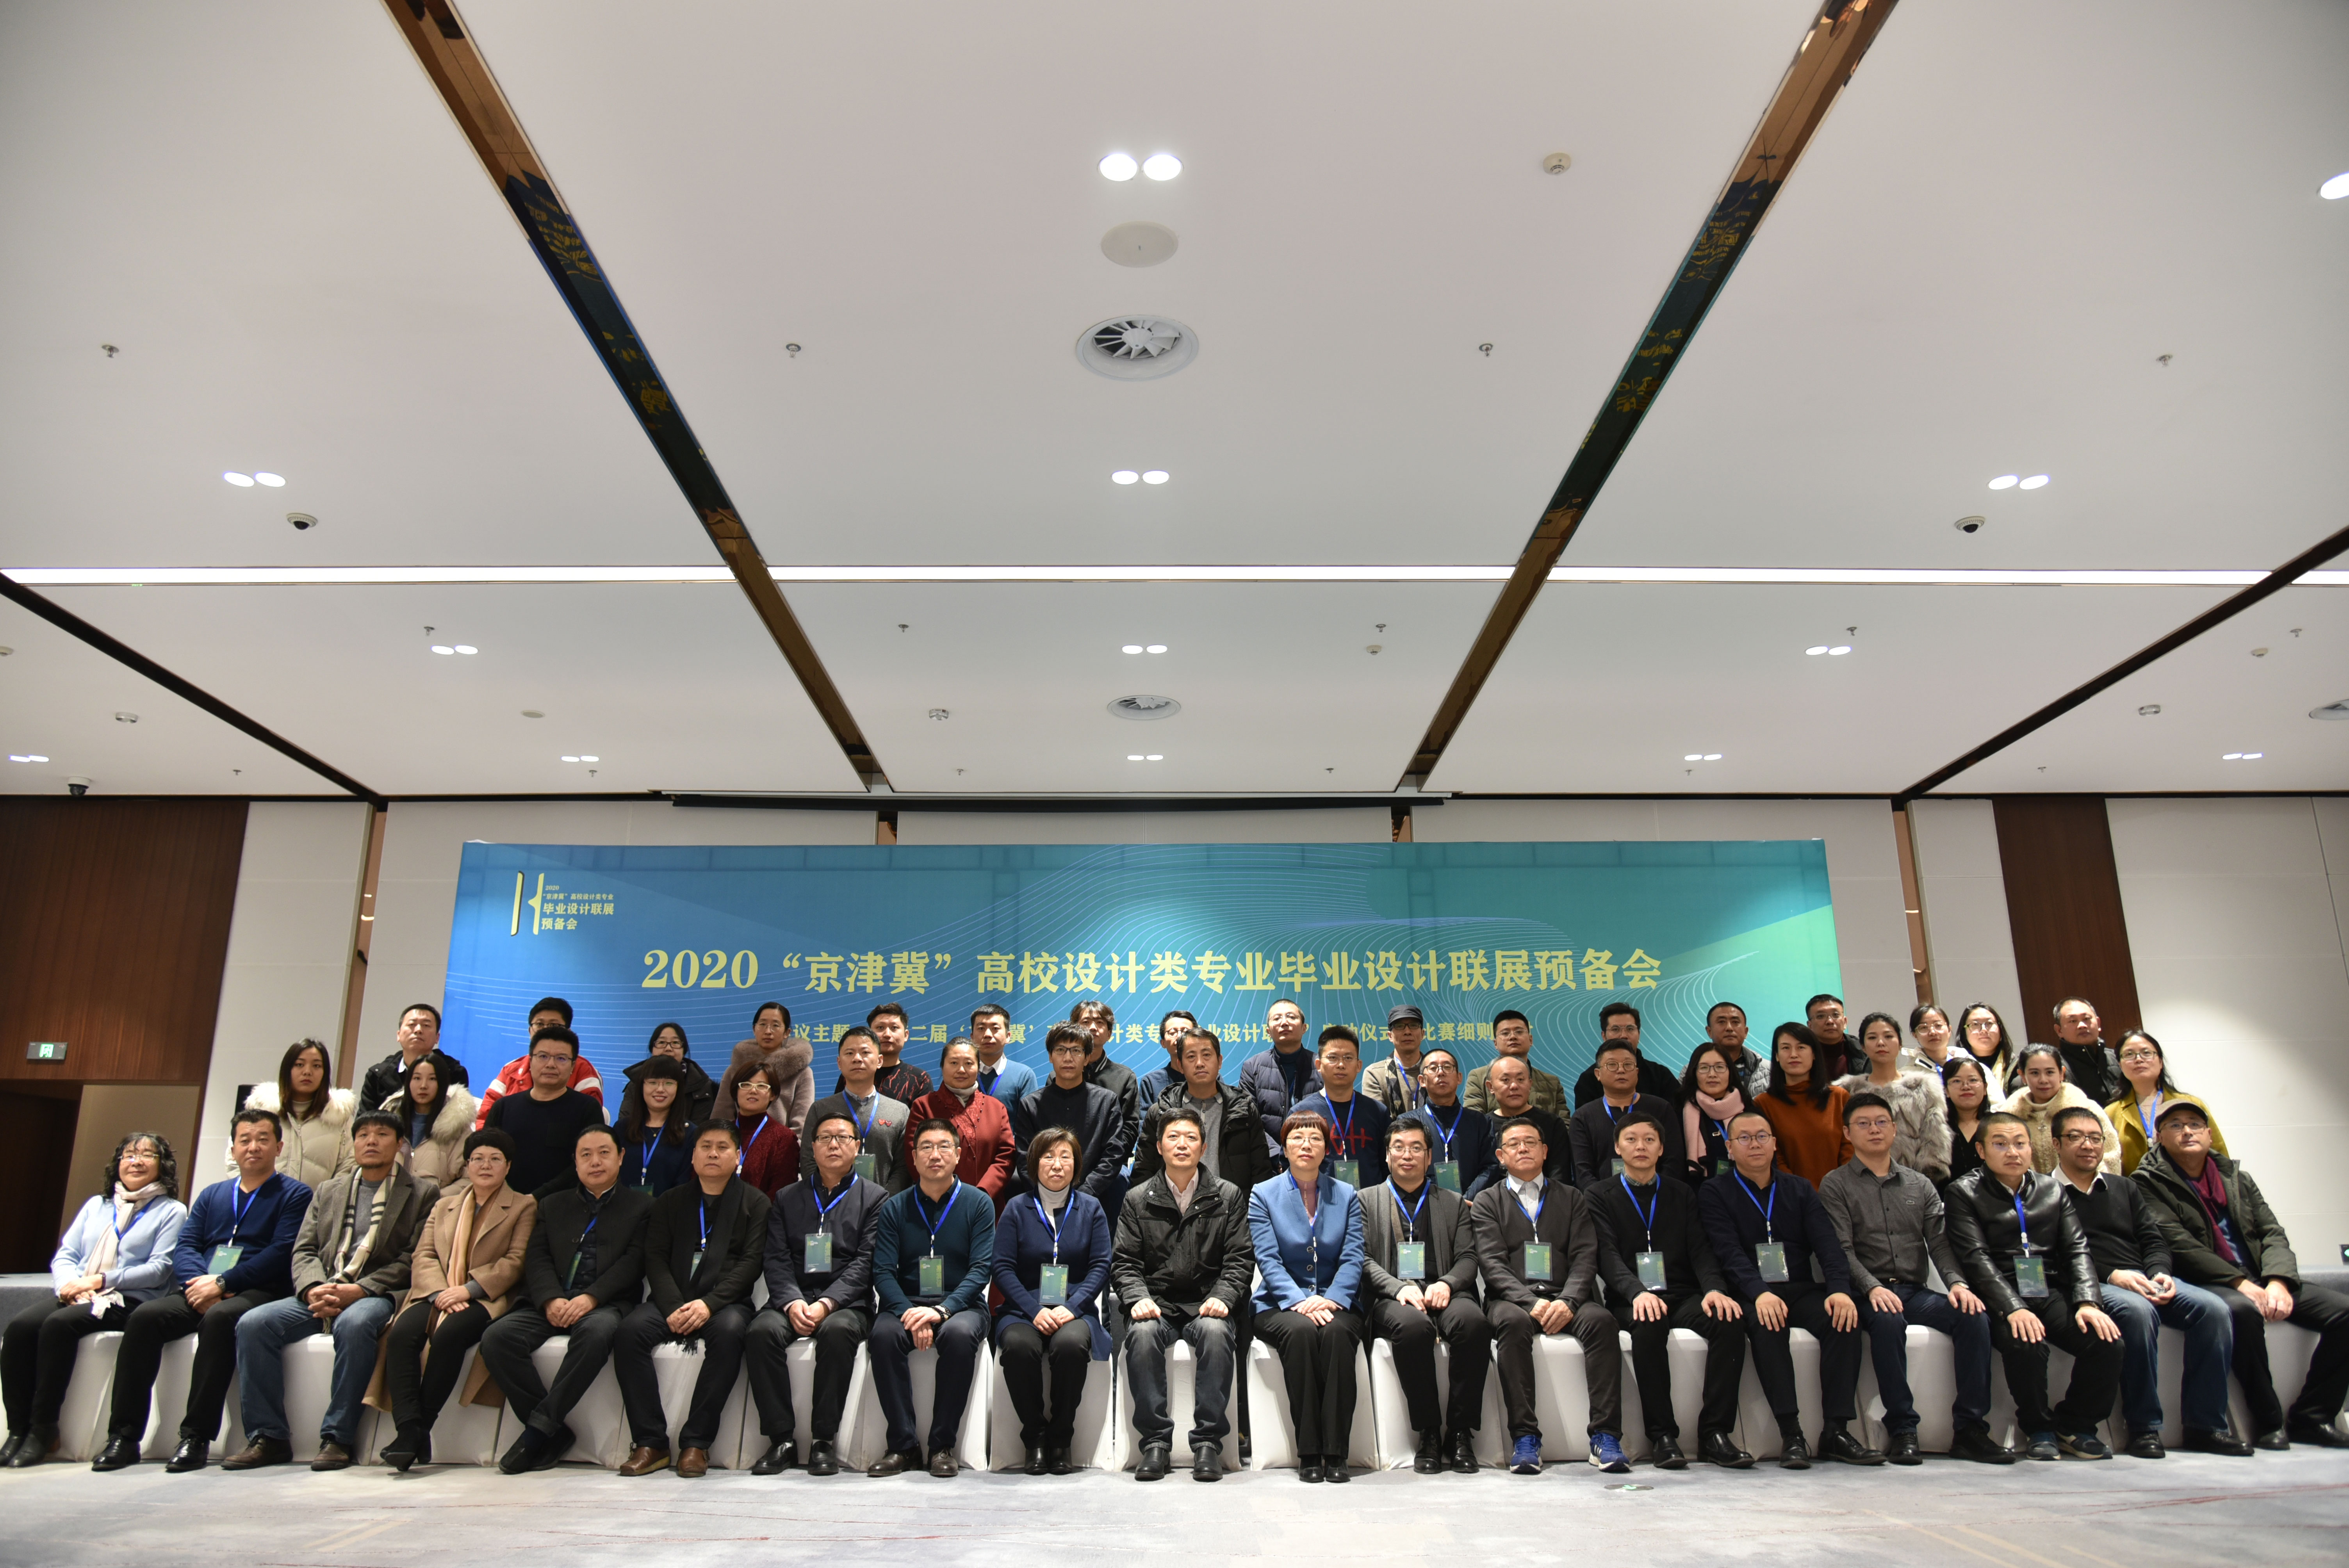 2019年12月14日-2020“京津冀”高校设计类专业毕业设计联展活动